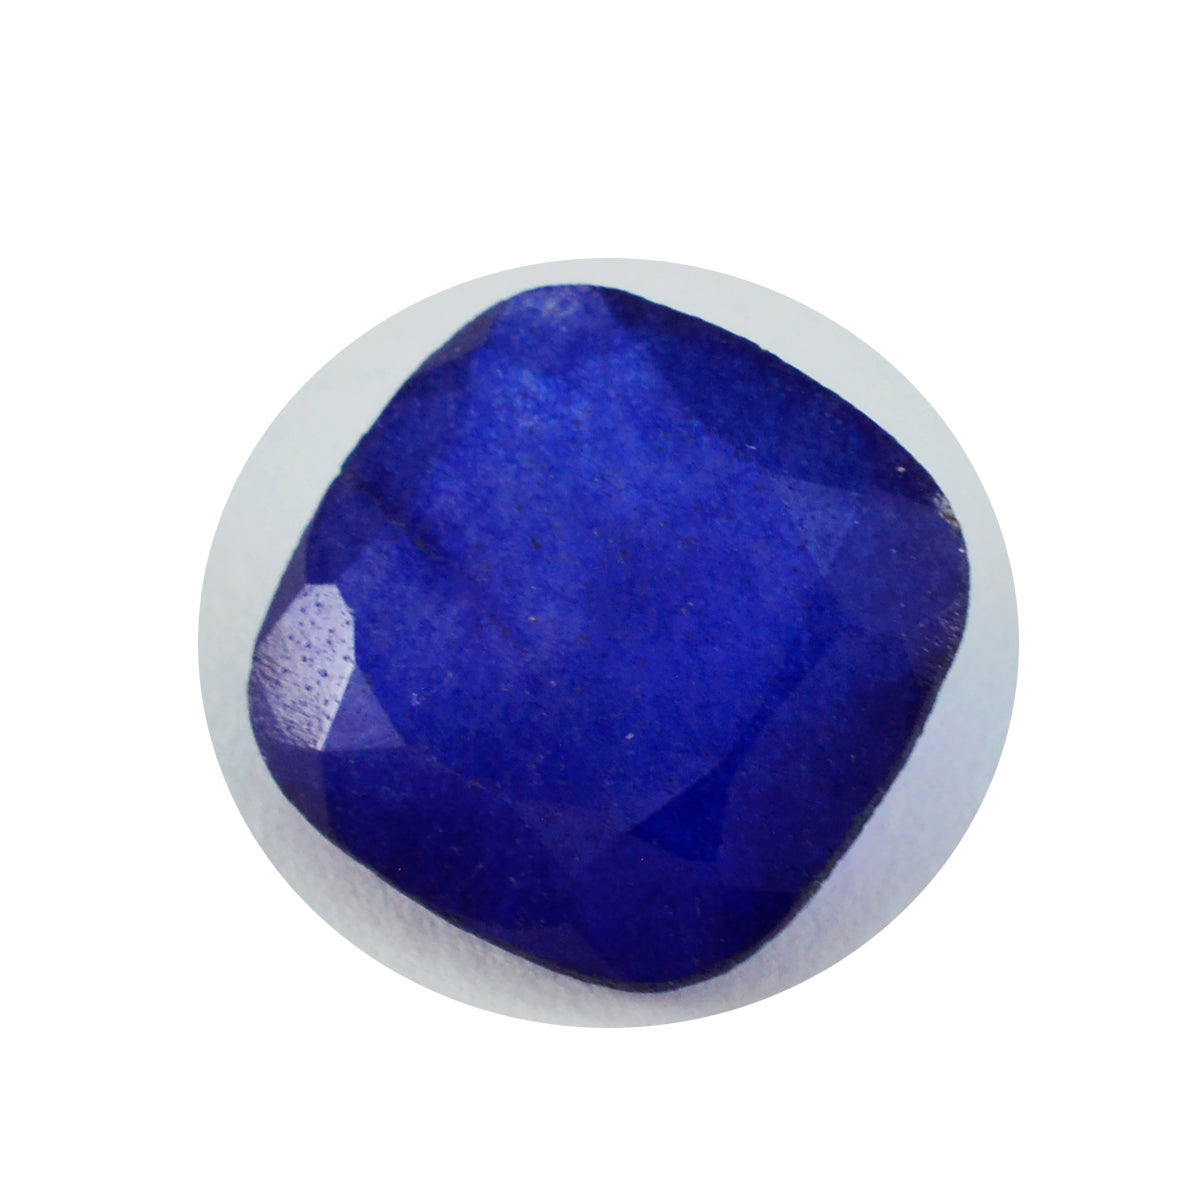 riyogems 1pc véritable jaspe bleu à facettes 14x14 mm forme coussin belle pierre précieuse de qualité